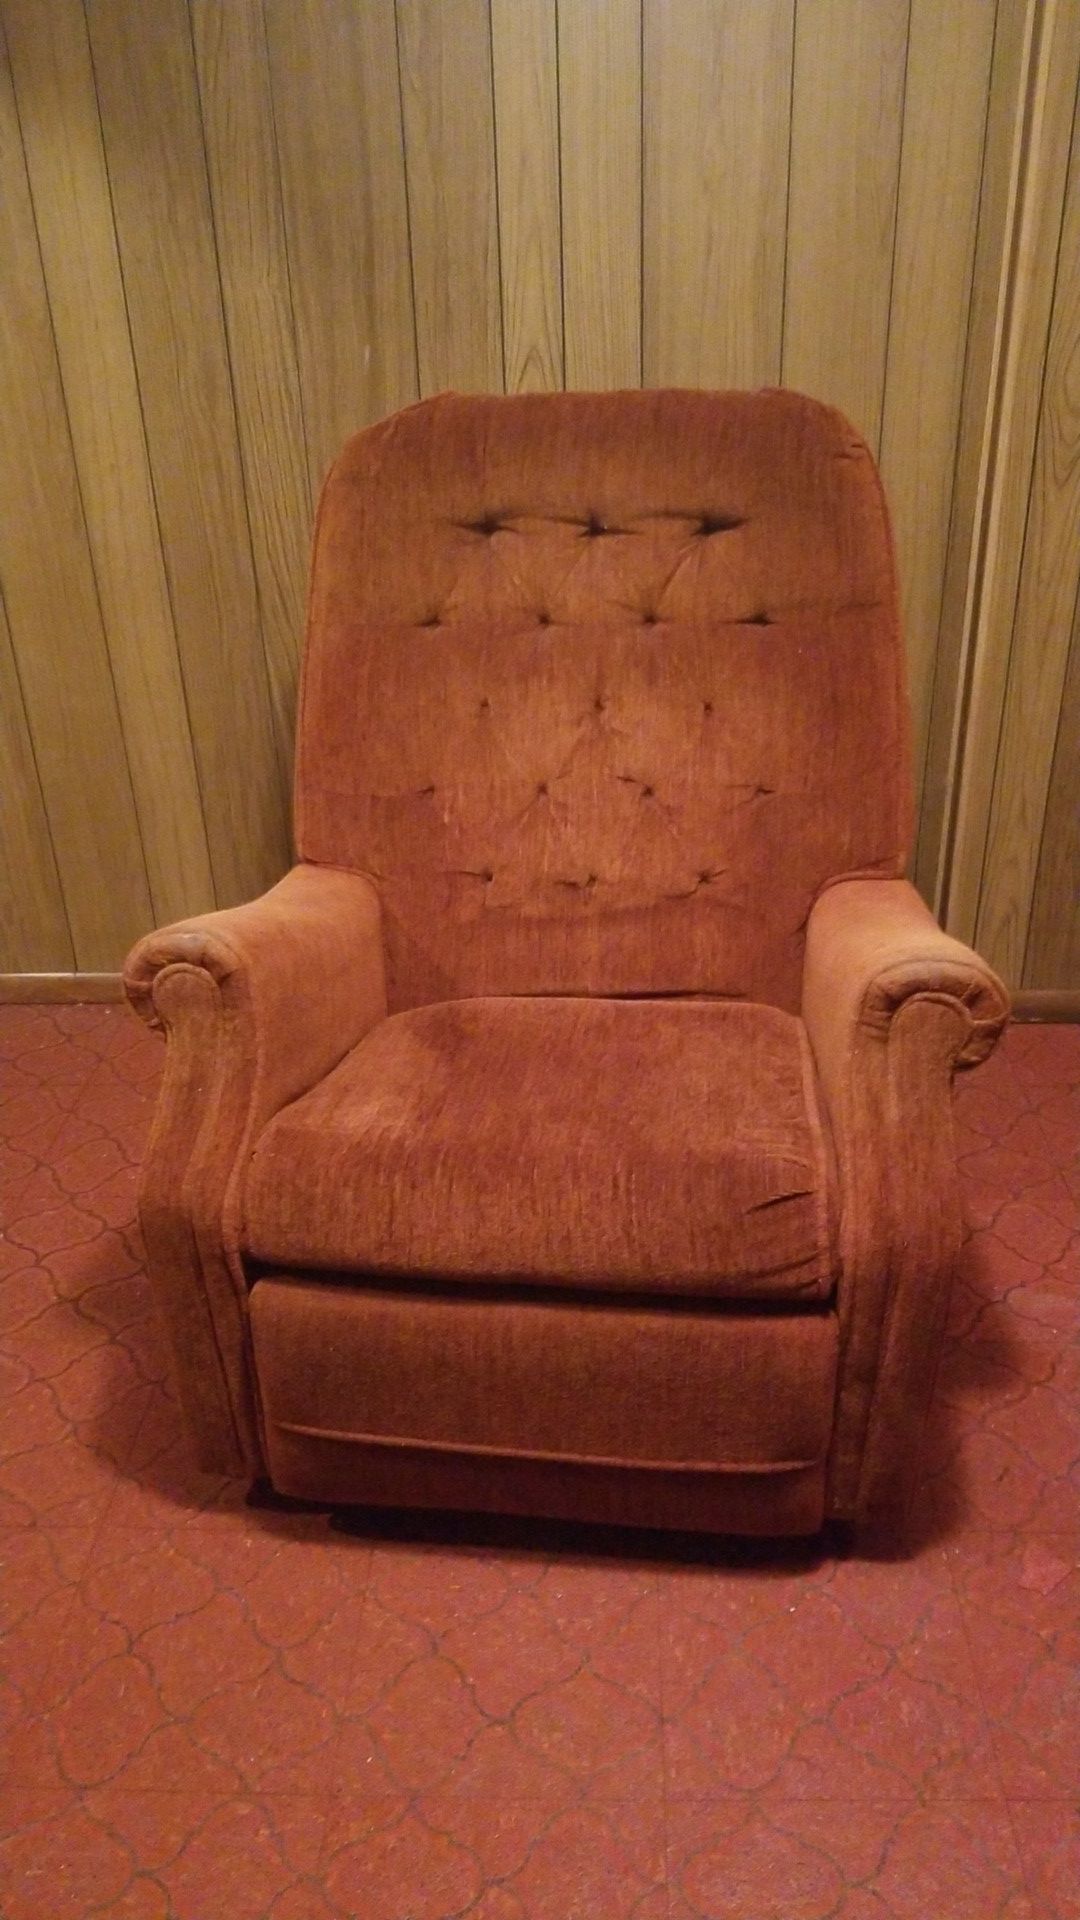 Orange recliner chair